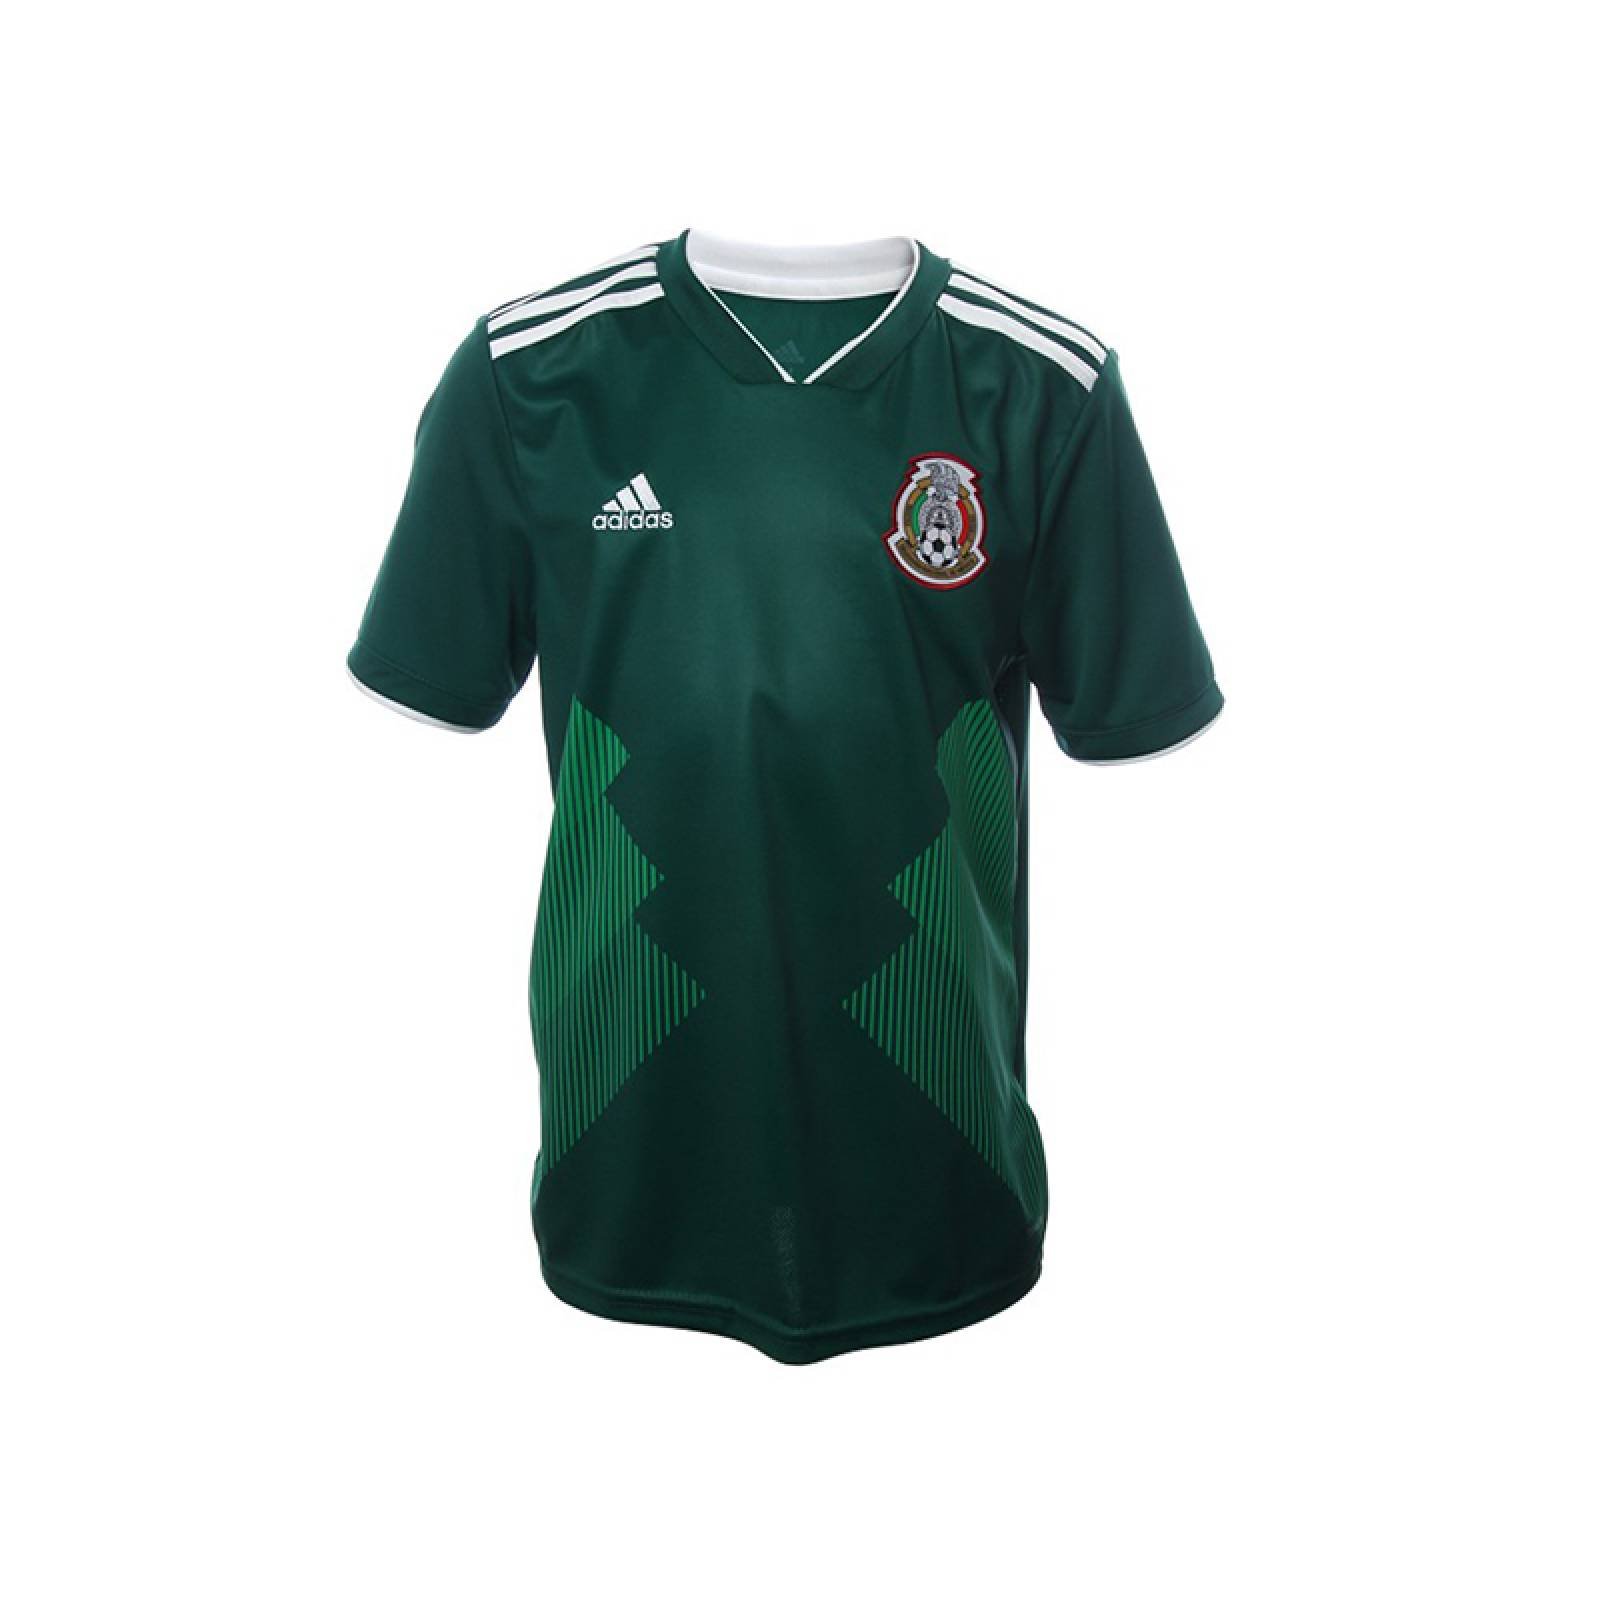 Jersey México Local 2018 Adidas - Infantil Camiseta Playera Mundial